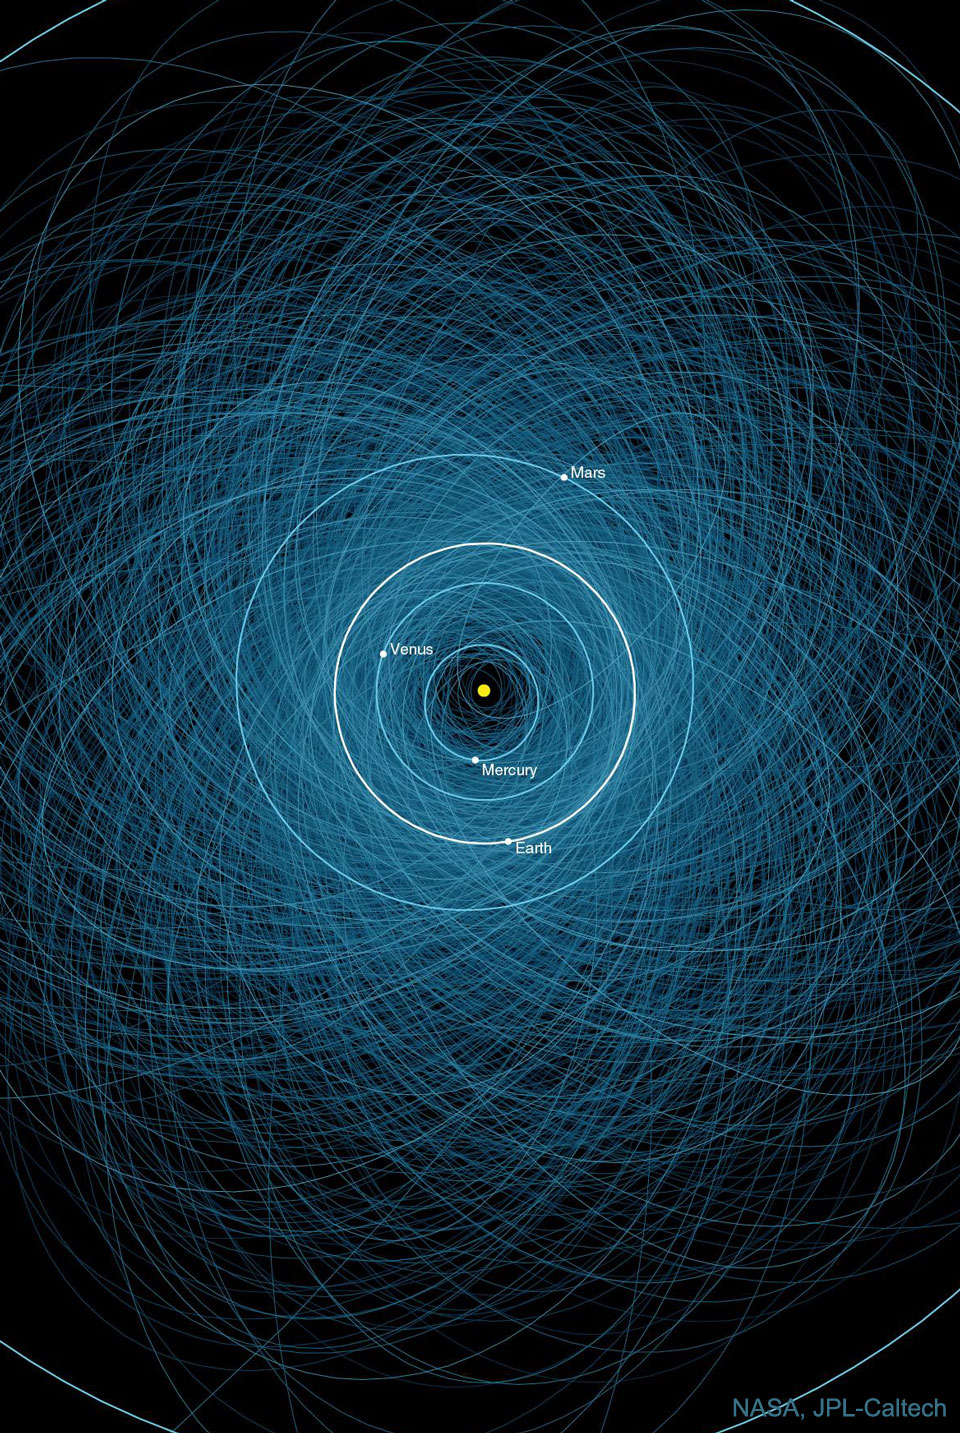 Ciemne tło wypełnione jest licznymi jasnoniebieskimi elipsami.
Bliżej środka narysowane i opisane są prawie kołowe orbity planet wewnętrznych
Układu Słonecznego. Zobacz opis. Po kliknięciu obrazka załaduje się wersja o największej dostępnej rozdzielczości.